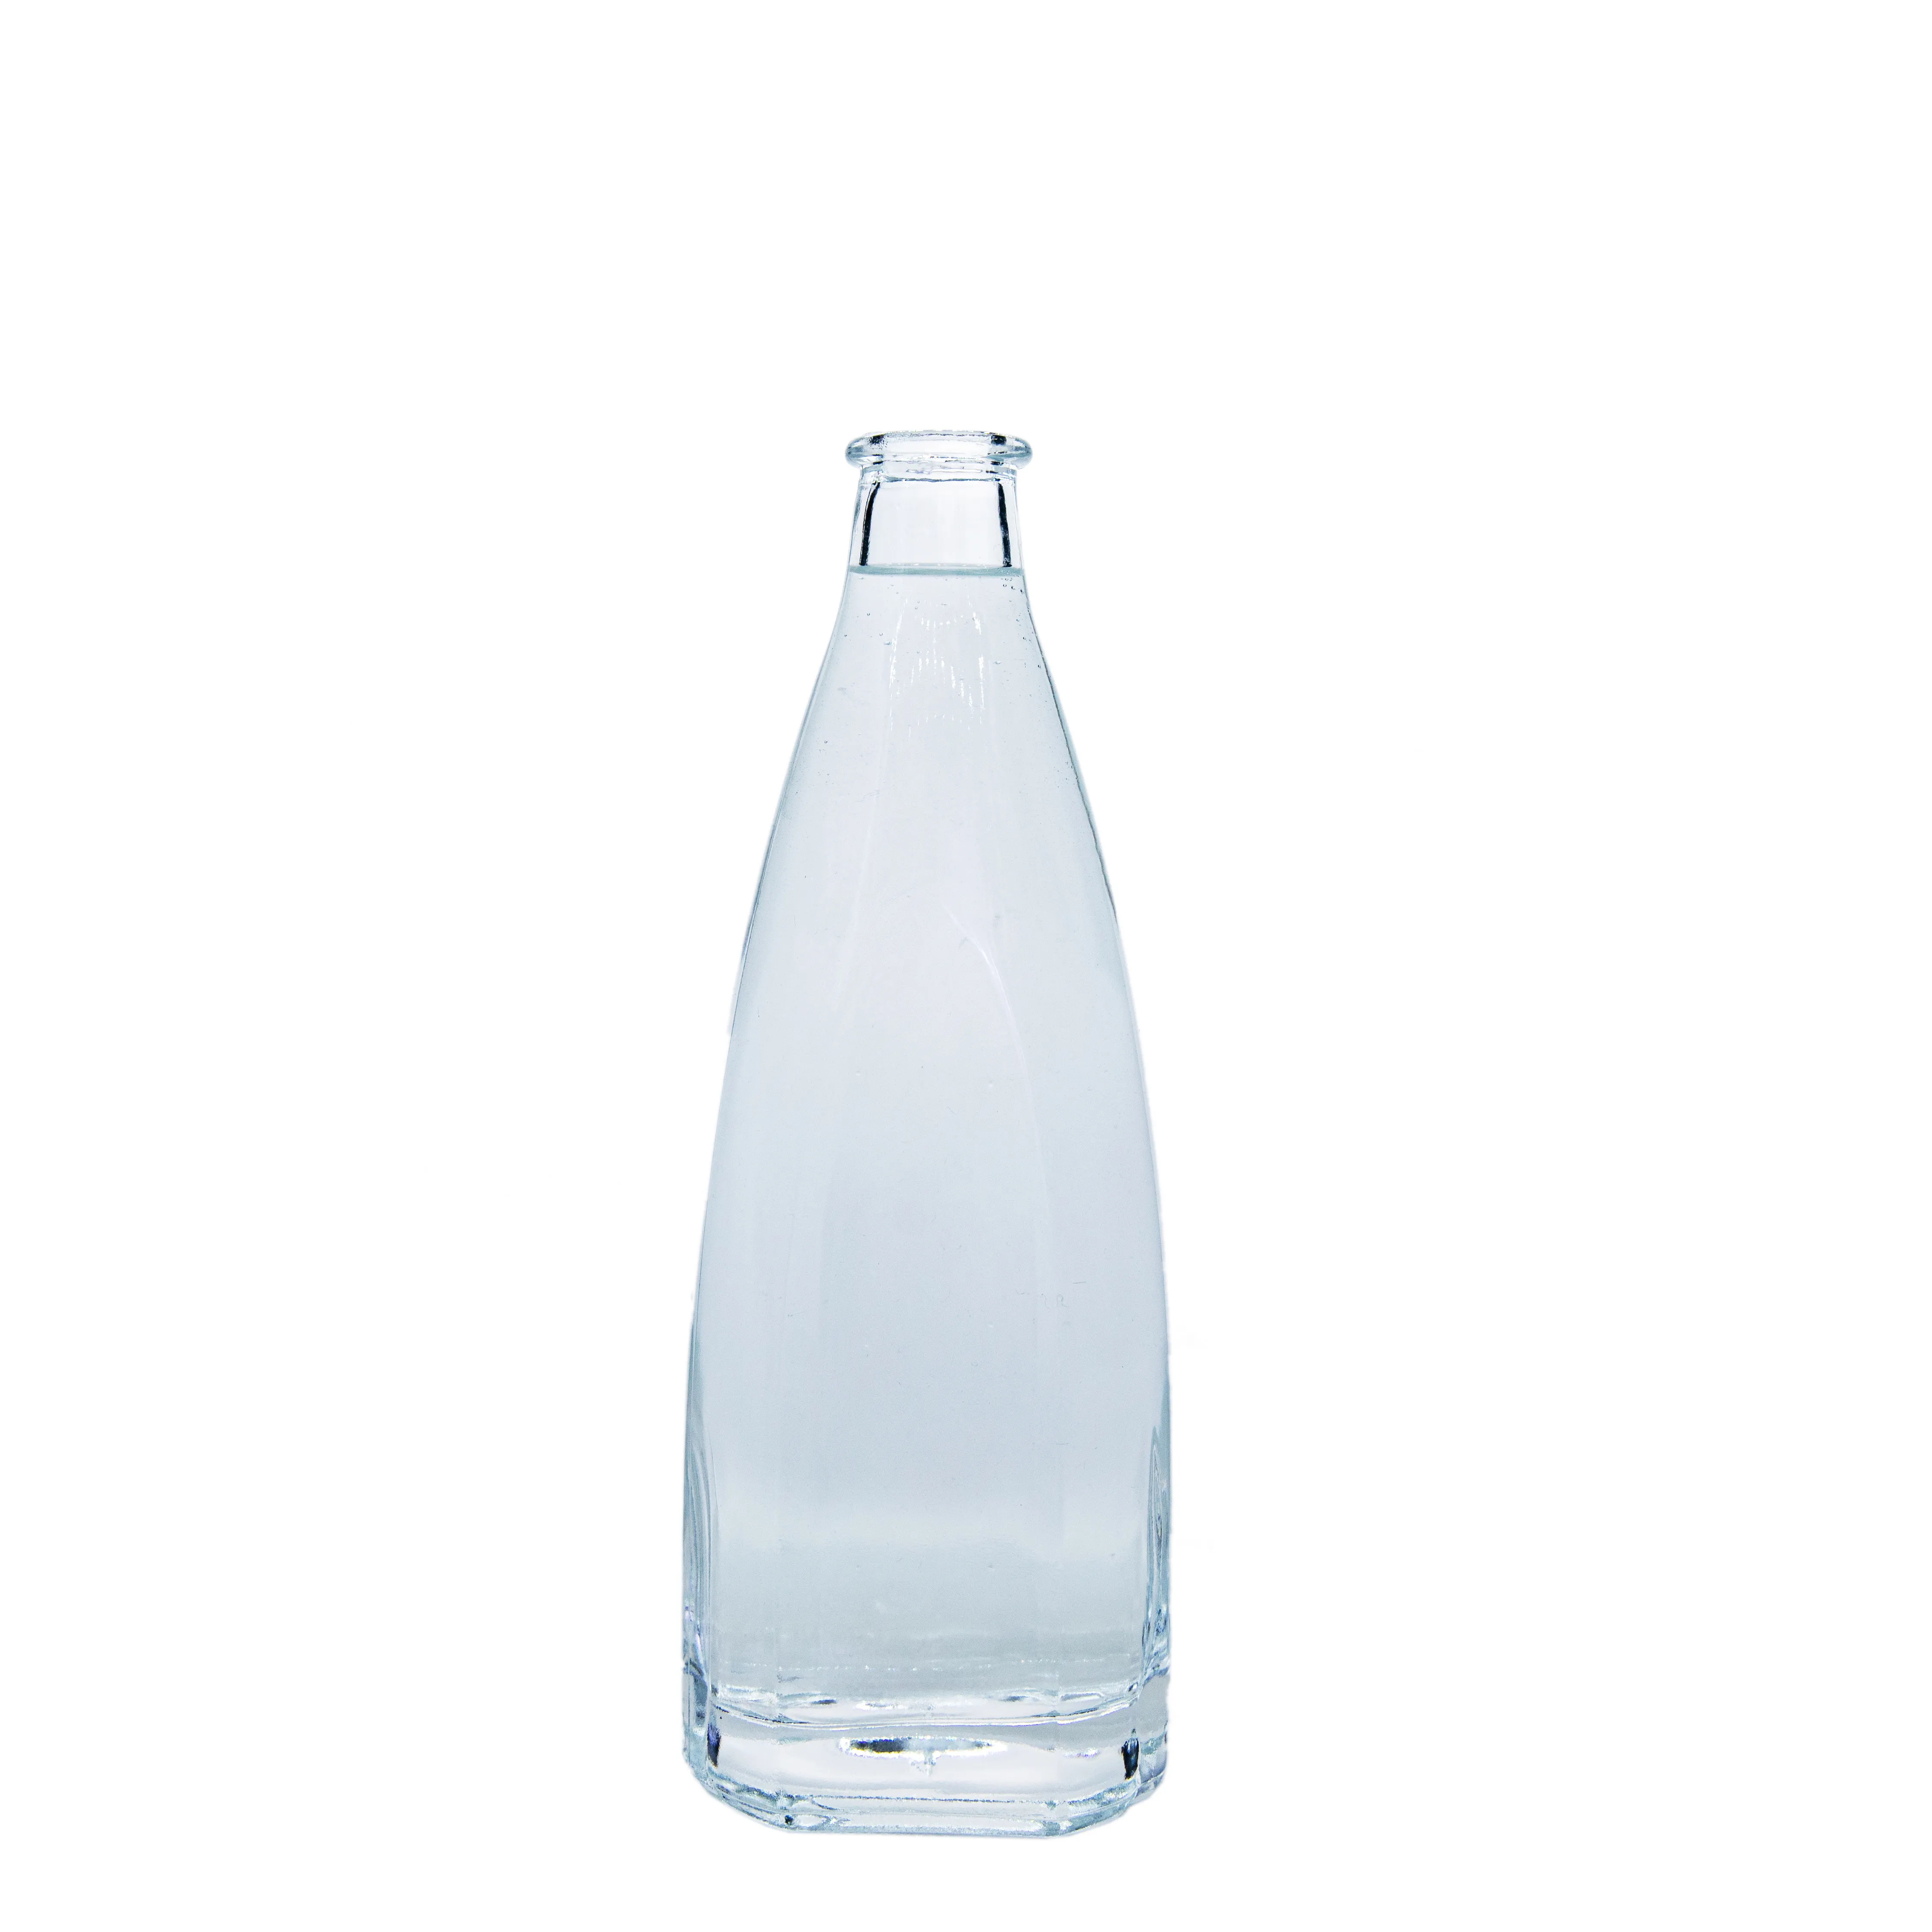 Delicate Lovely Glass Bottles